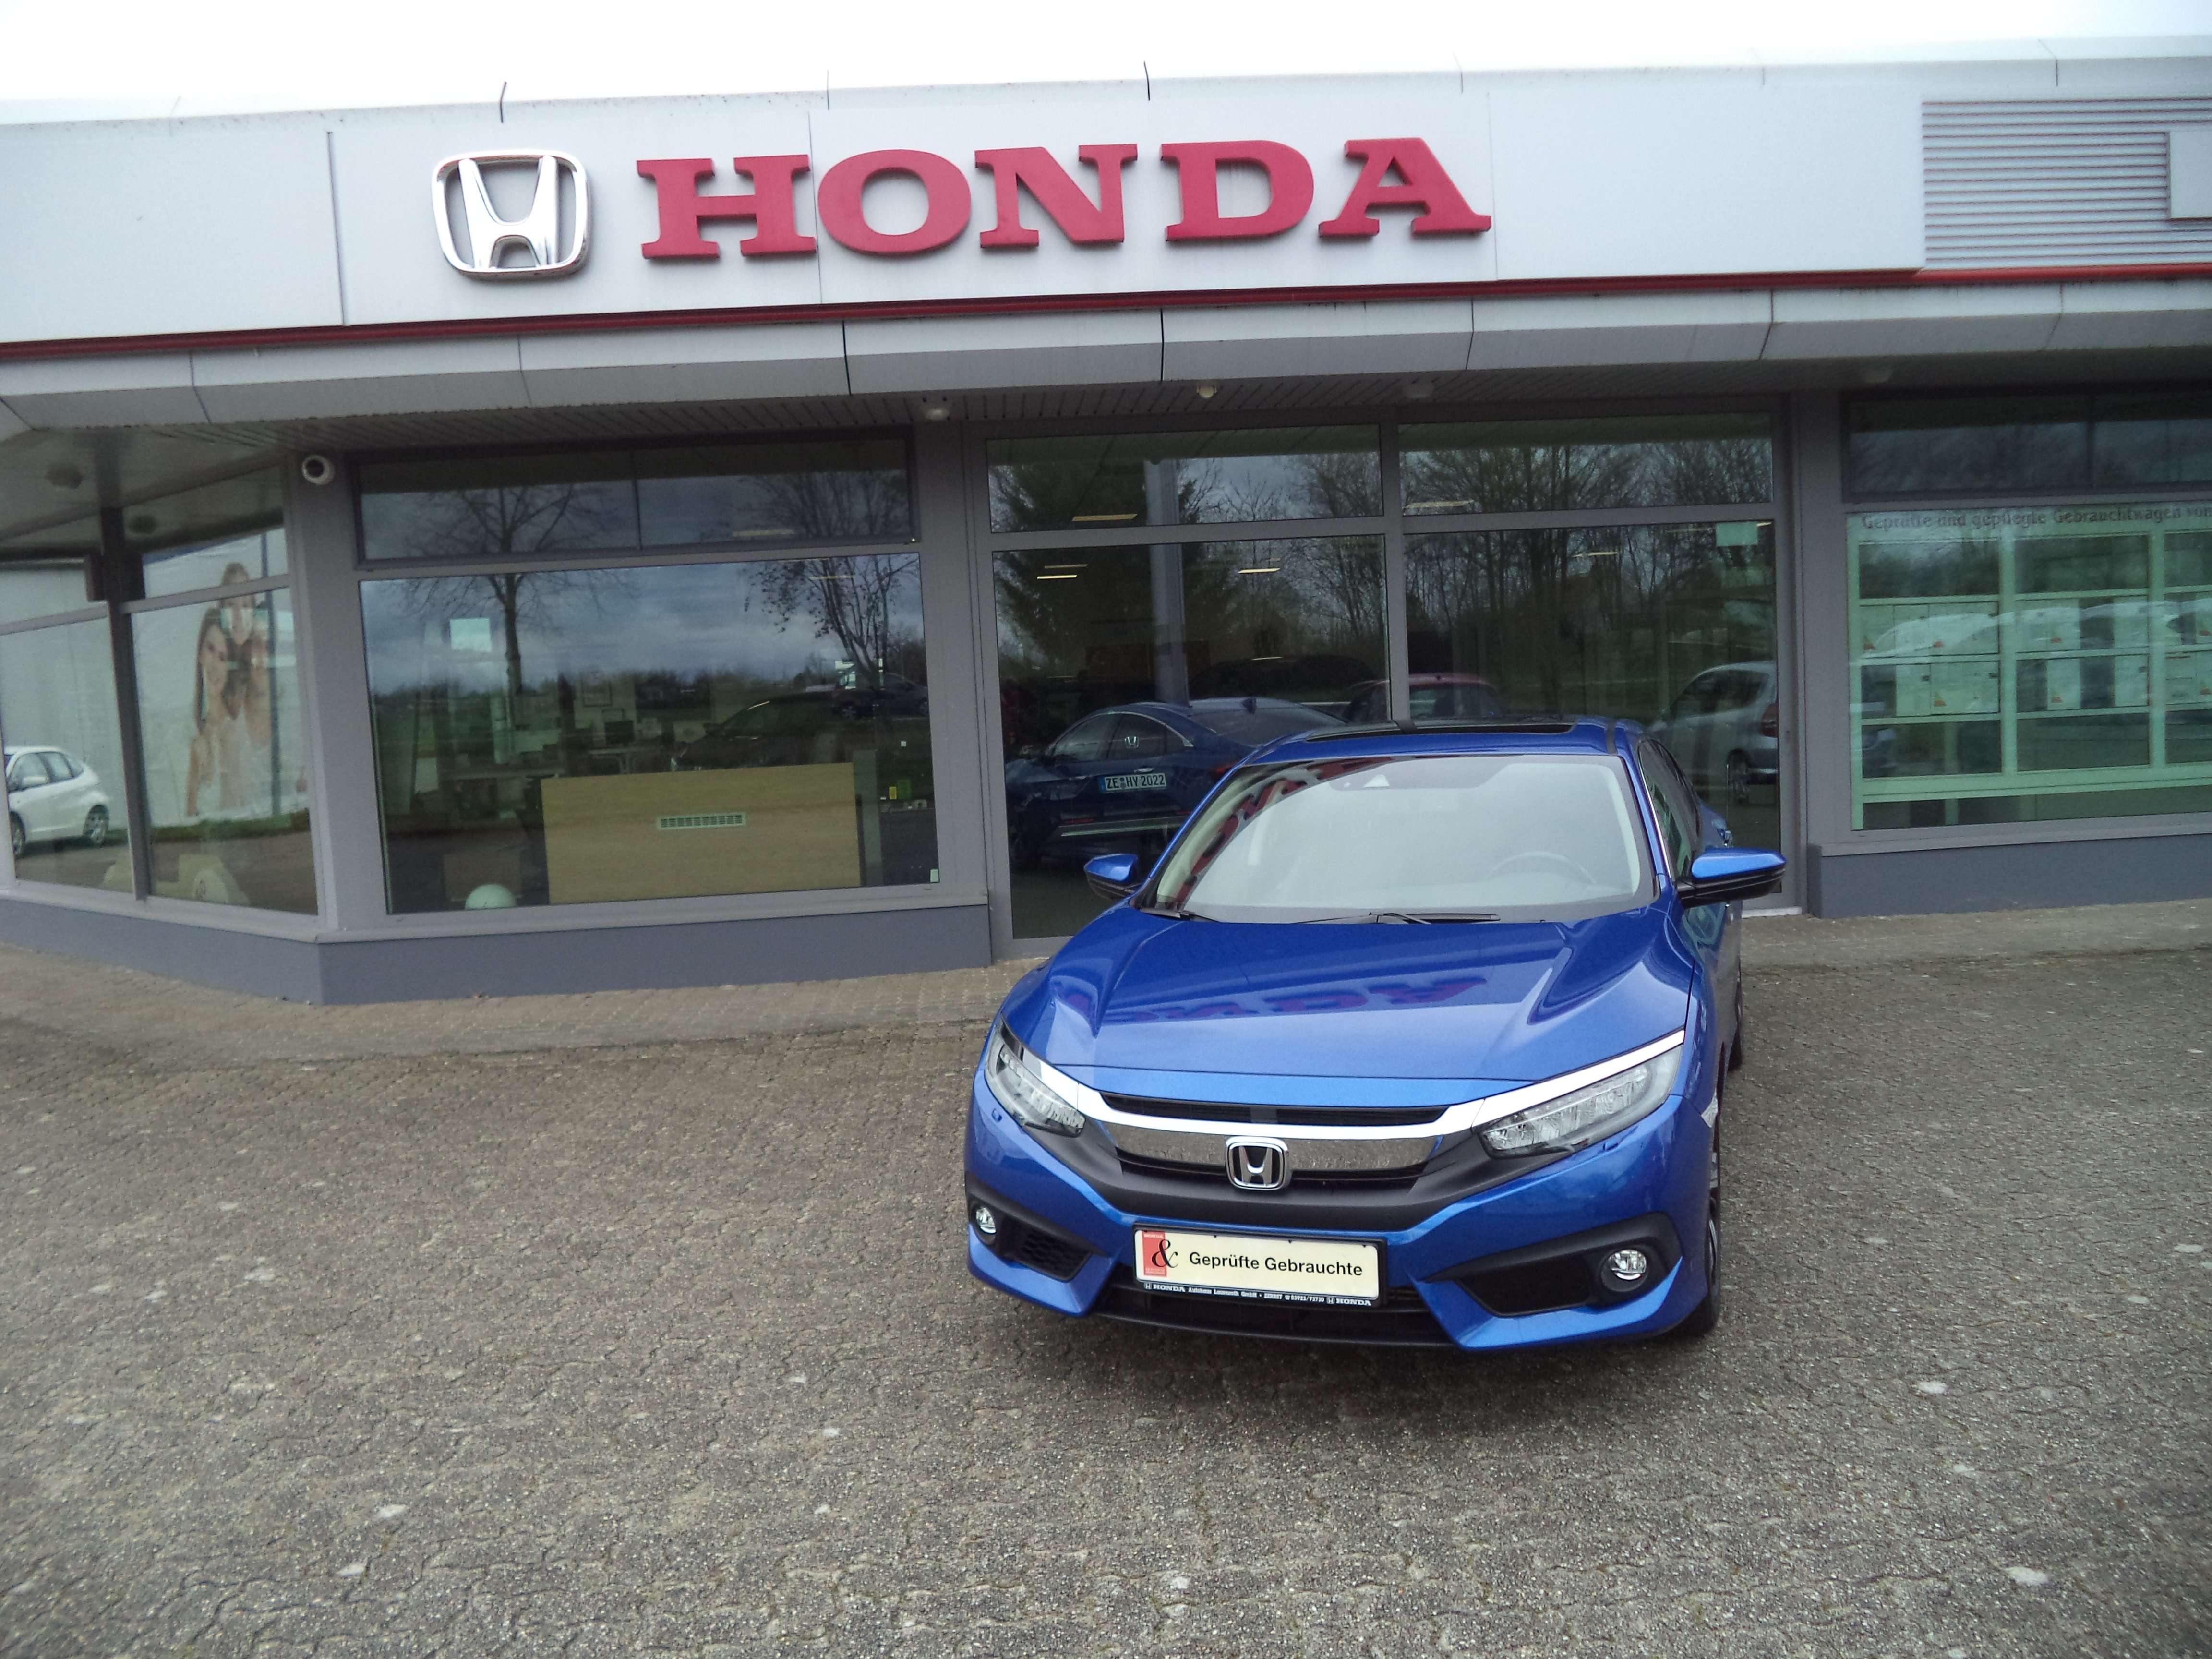 Honda Civic Sedan in Blue used in Zerbst for € 19,890.-